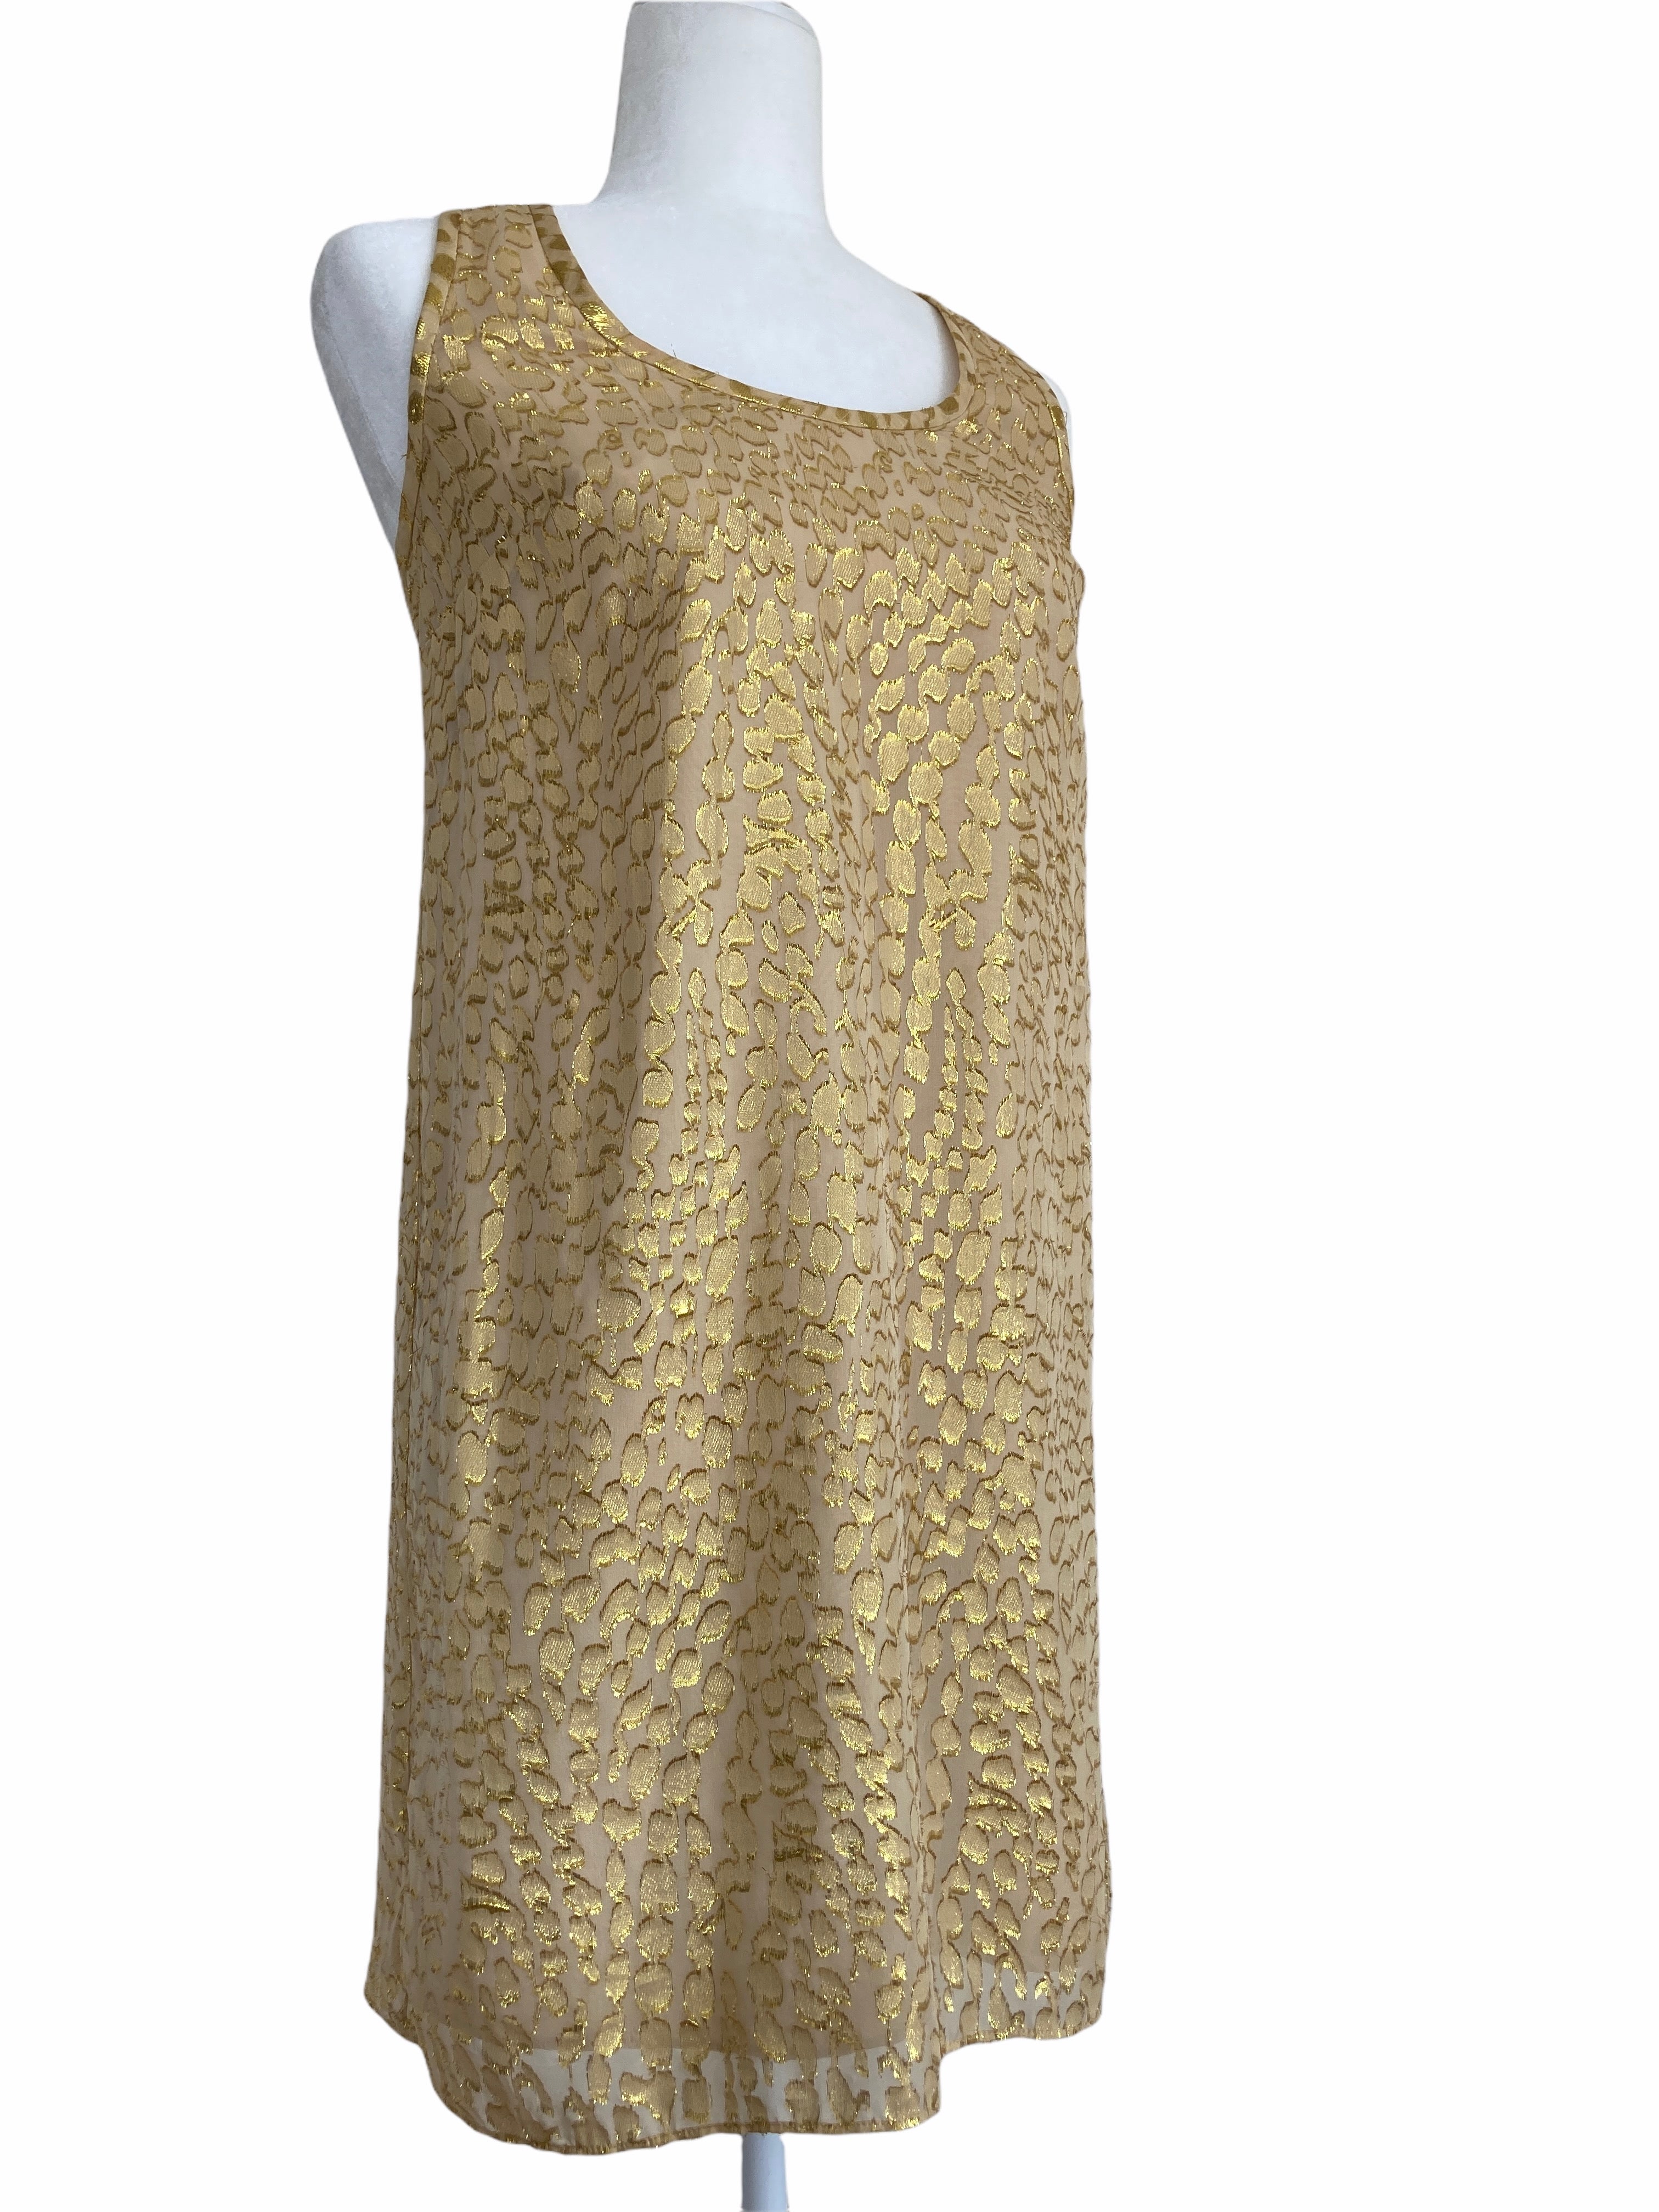 Lilly Pulitzer Gold Mini Dress, S